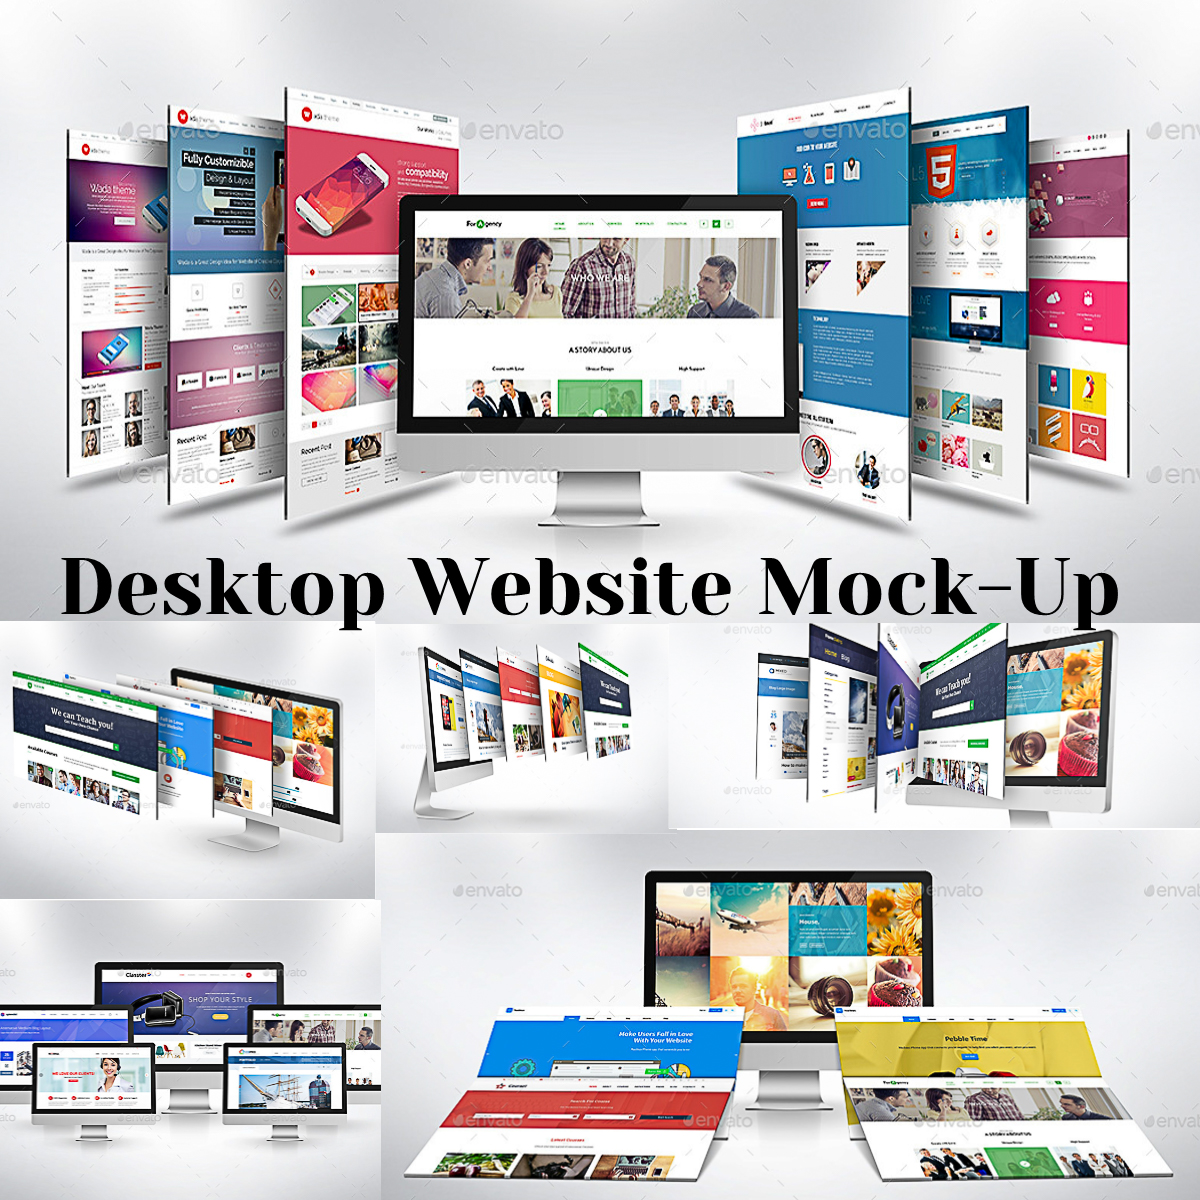 Download Desktop Website Mockup | Free download